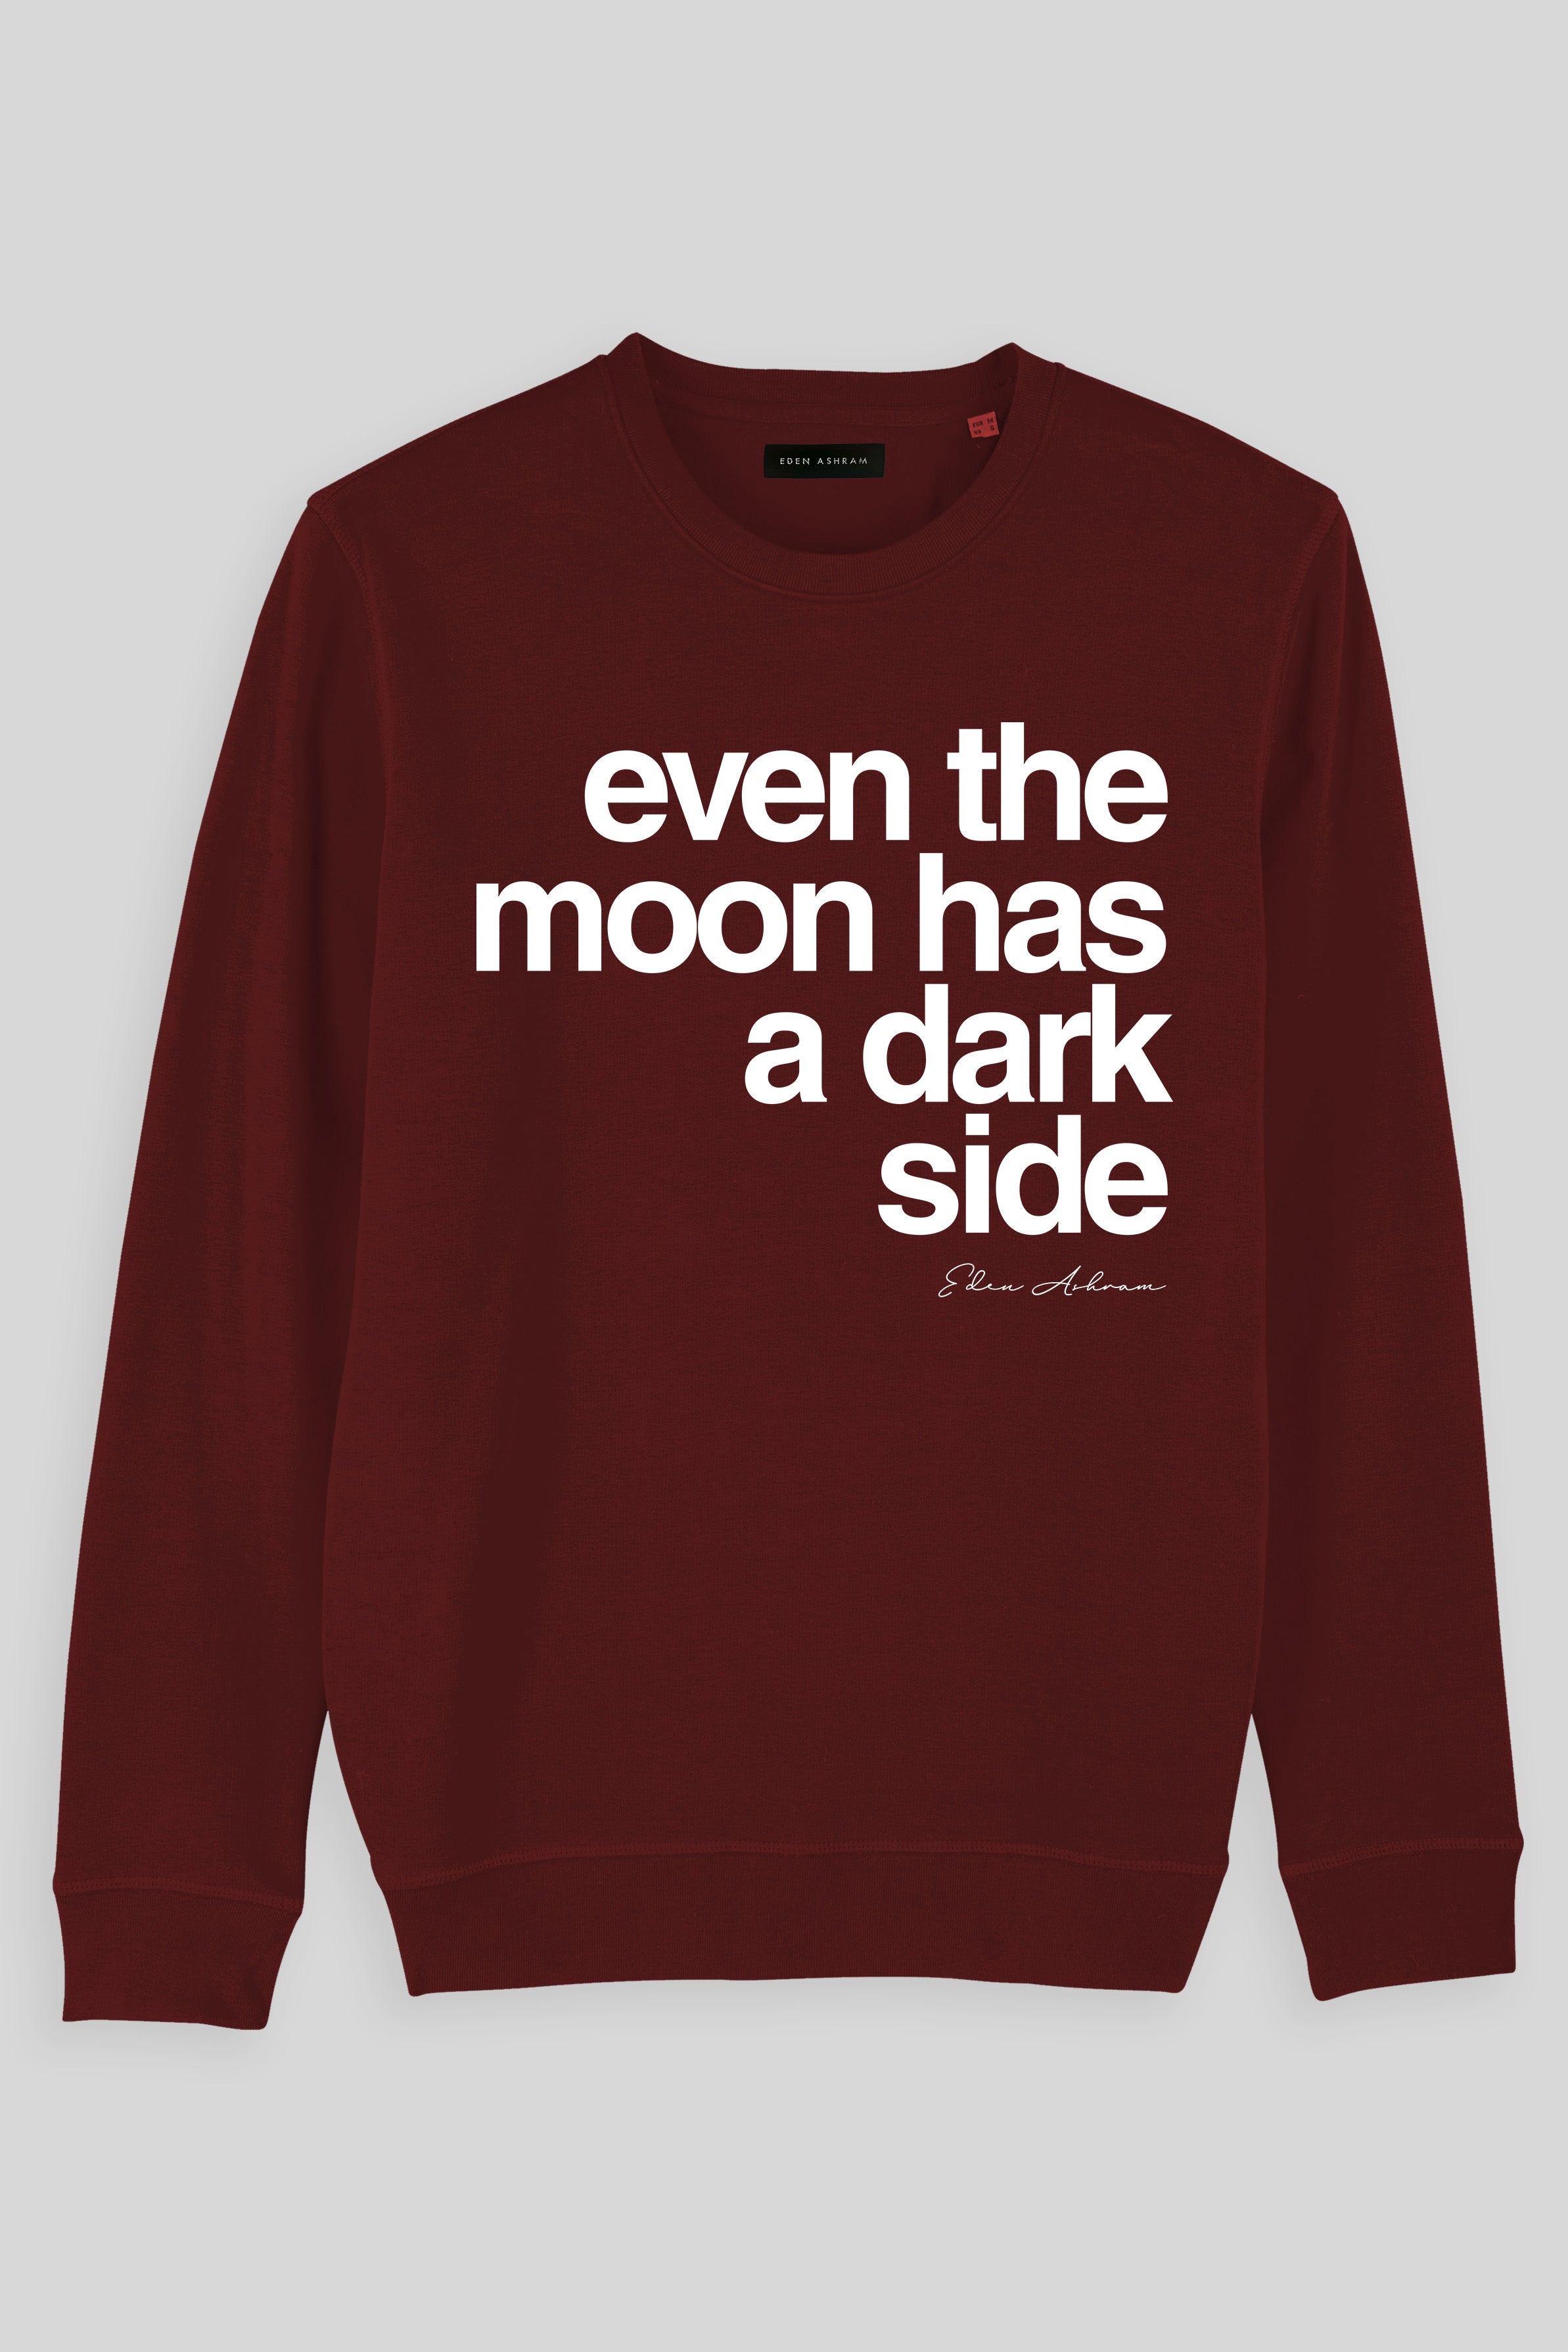 Eden Ashram Even The Moon Has A Dark Side Premium Crew Neck Sweatshirt Burgundy